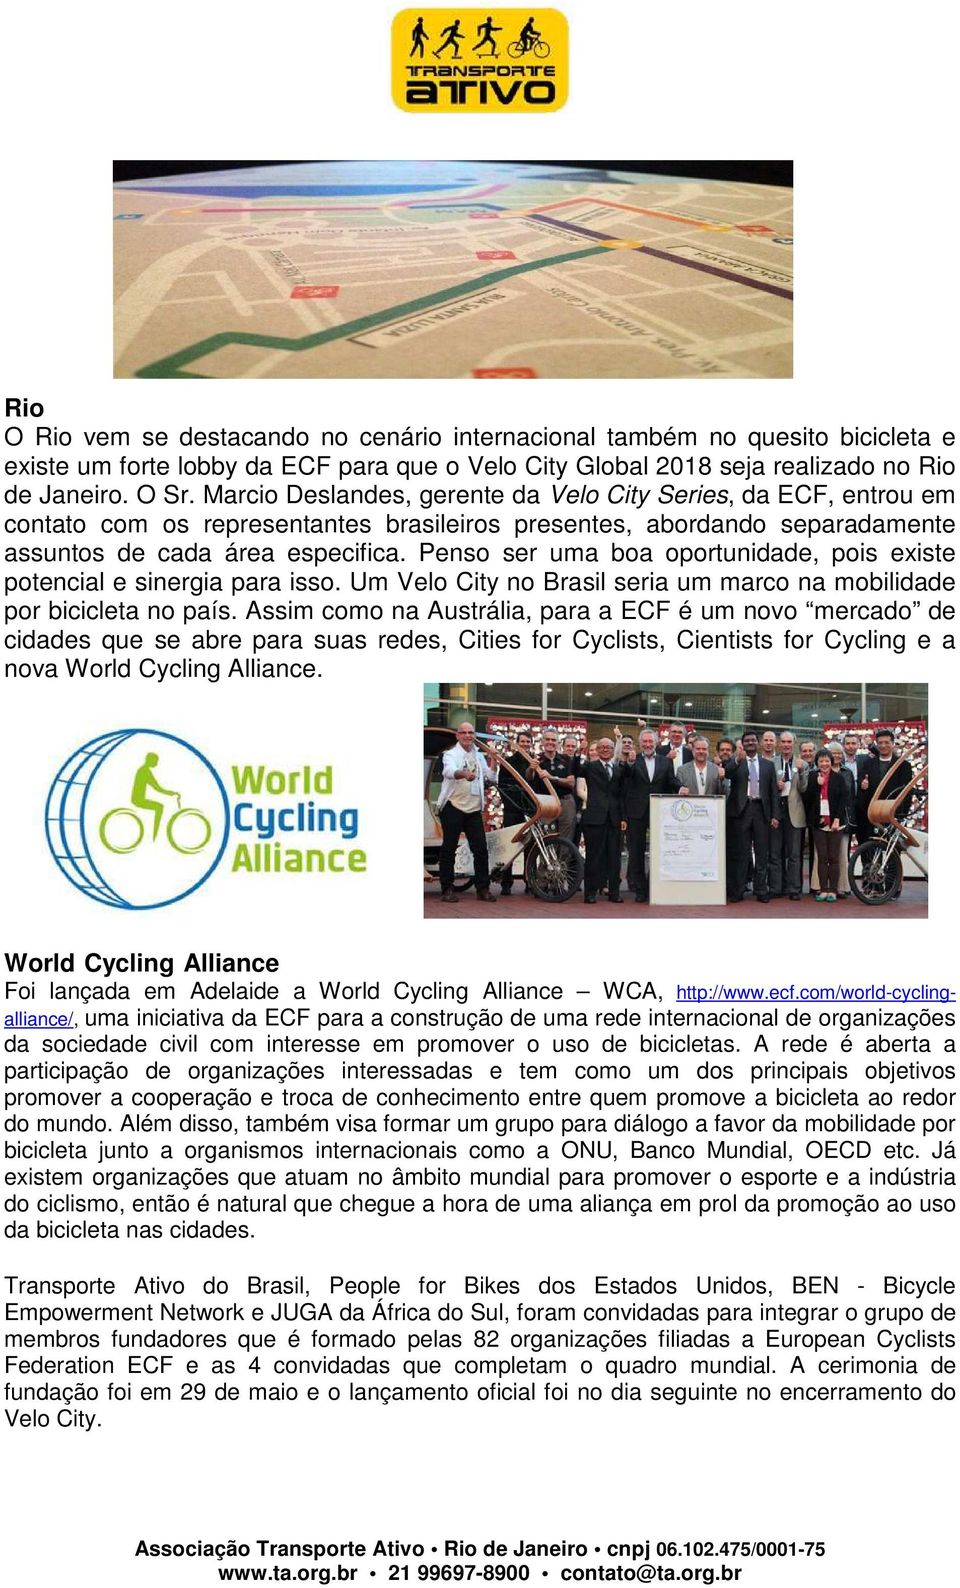 Penso ser uma boa oportunidade, pois existe potencial e sinergia para isso. Um Velo City no Brasil seria um marco na mobilidade por bicicleta no país.